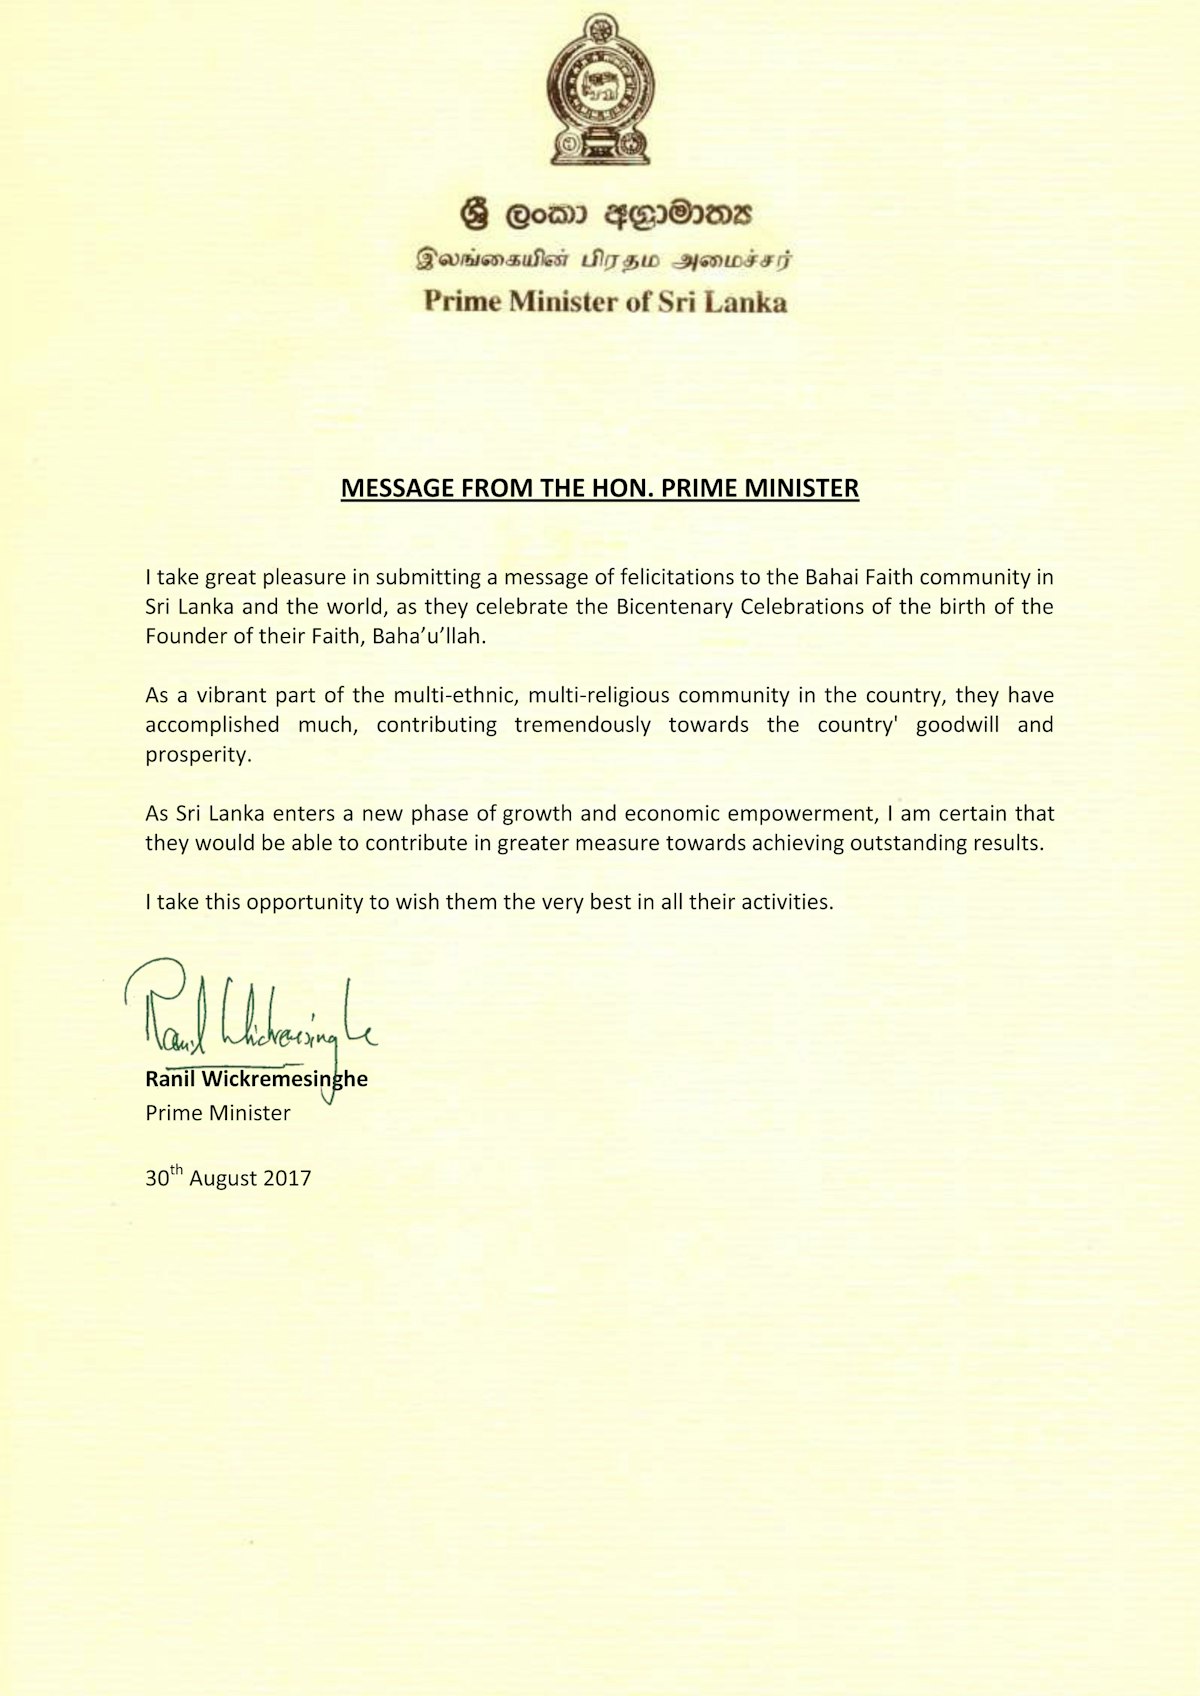 En un mensaje con fecha de 30 de agosto de 2017 a los bahá’ís de Sri Lanka, el primer ministro Ranil Wickremesinghe saludó a la comunidad bahá’í y la elogió por «contribuir enormemente a la buena voluntad y la prosperidad del país».